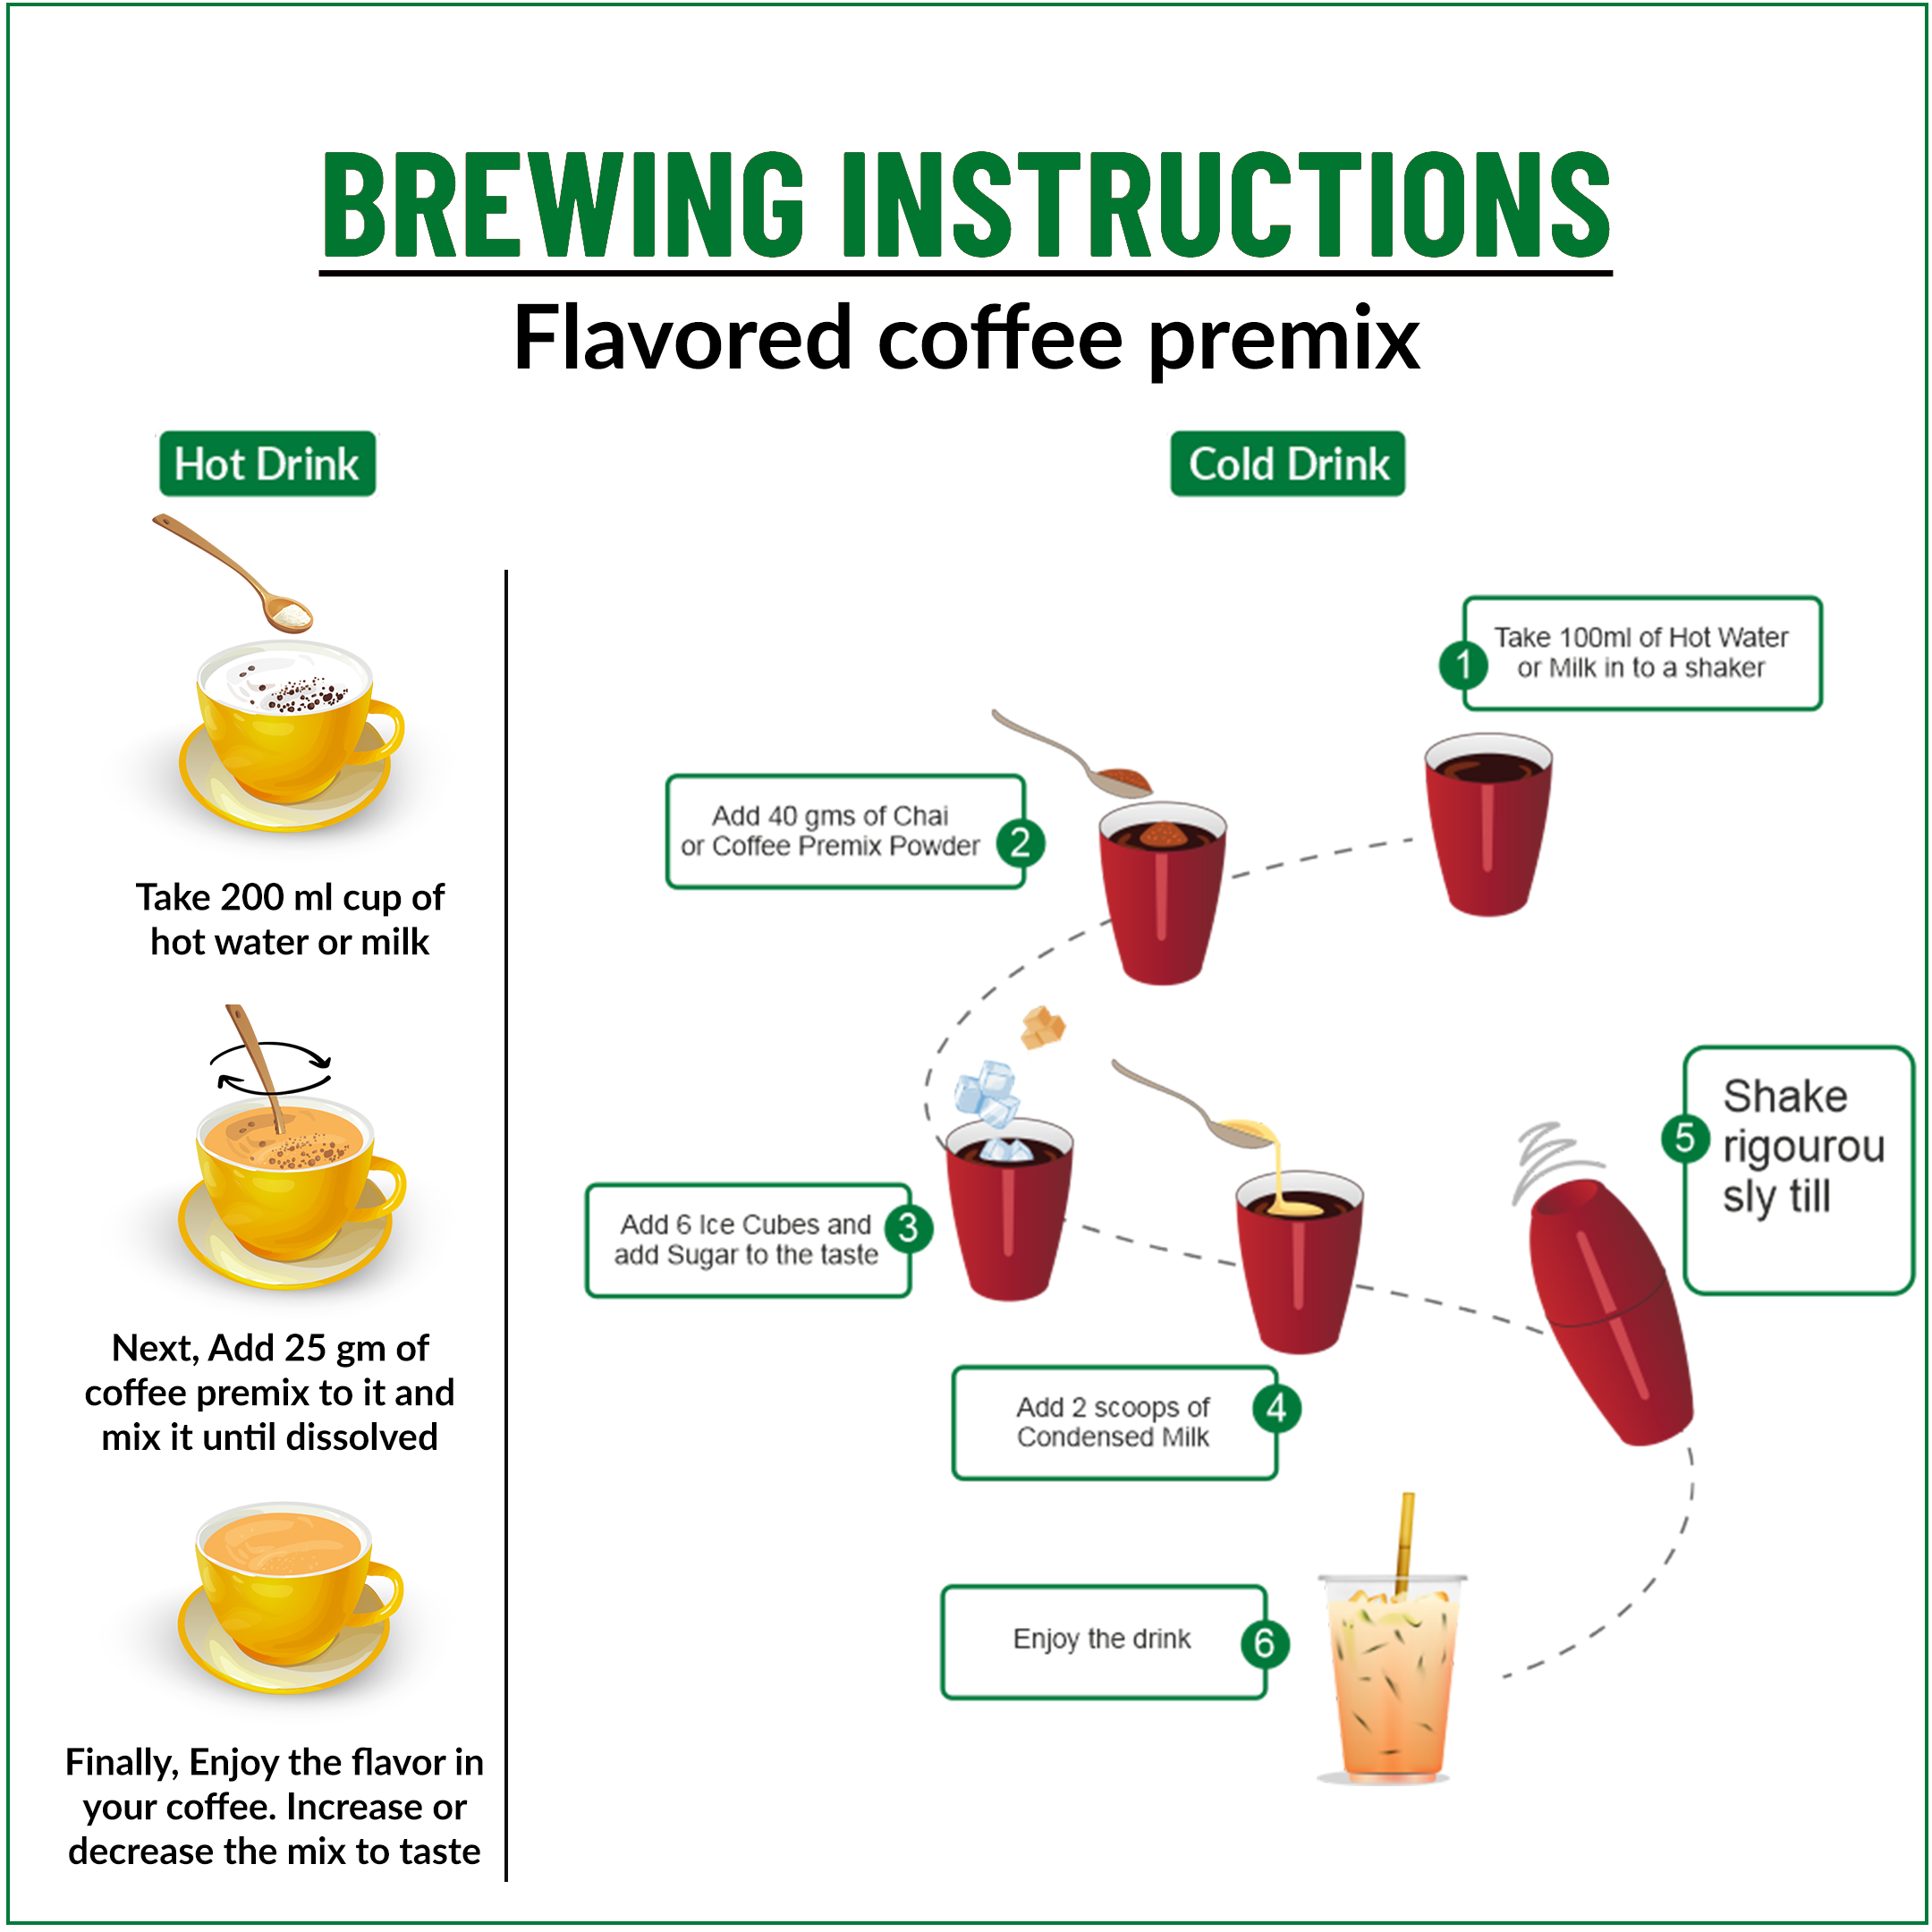 Hazelnut Instant Coffee Premix (3 in 1) - 400 gms